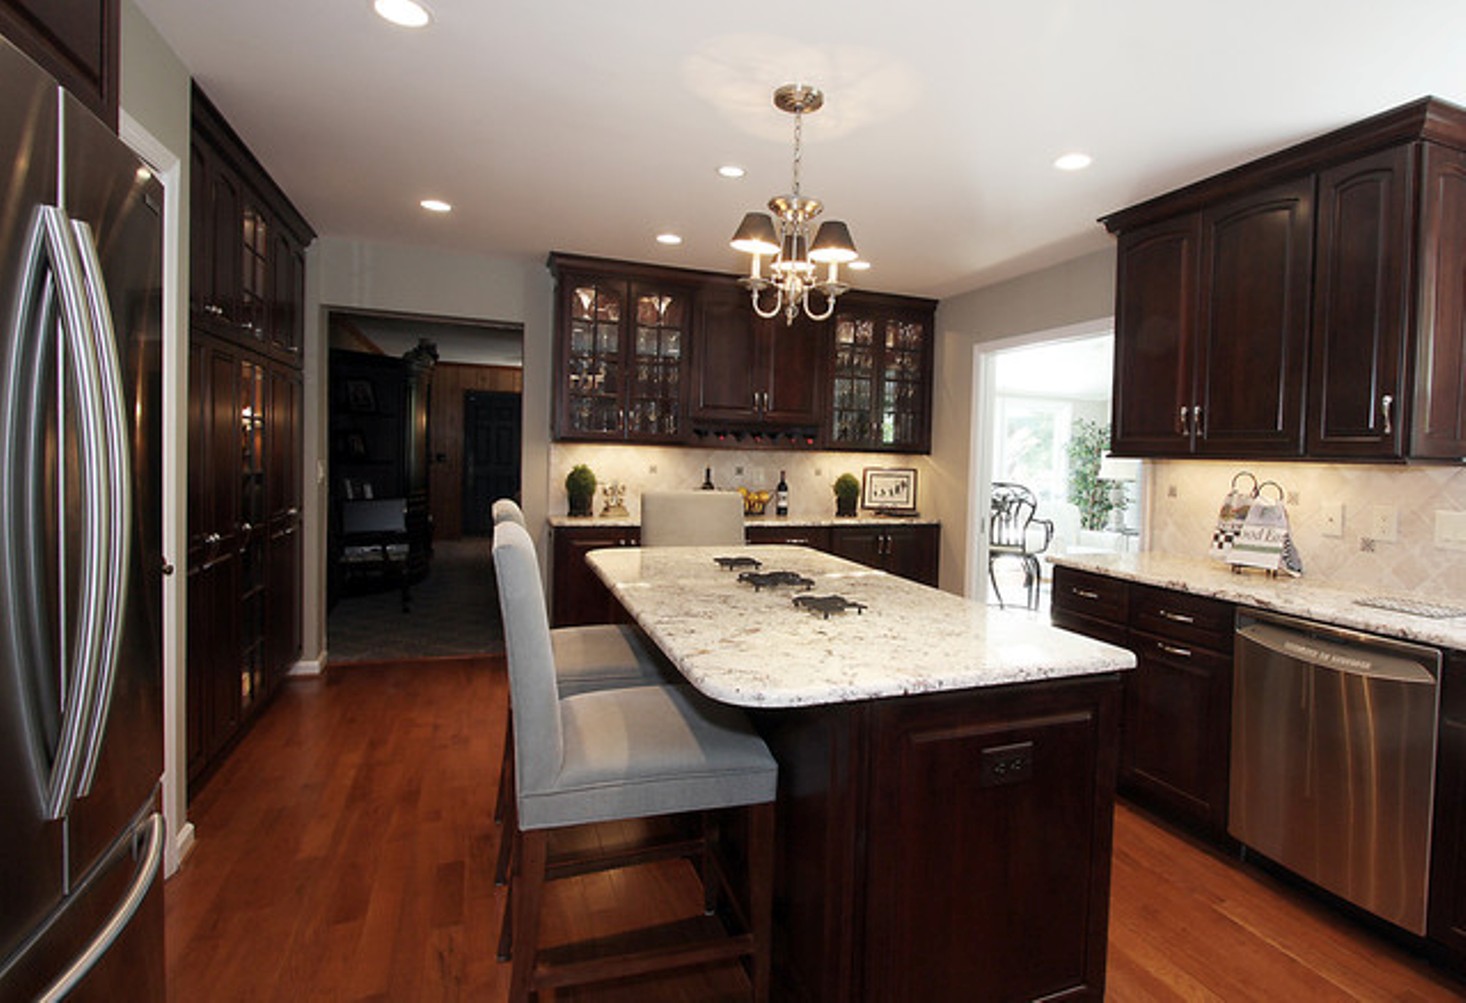 kitchen-renovation-ideas-throughout-average-cost-of-small-kitchen-remodel-6-design-ideas-kitchen